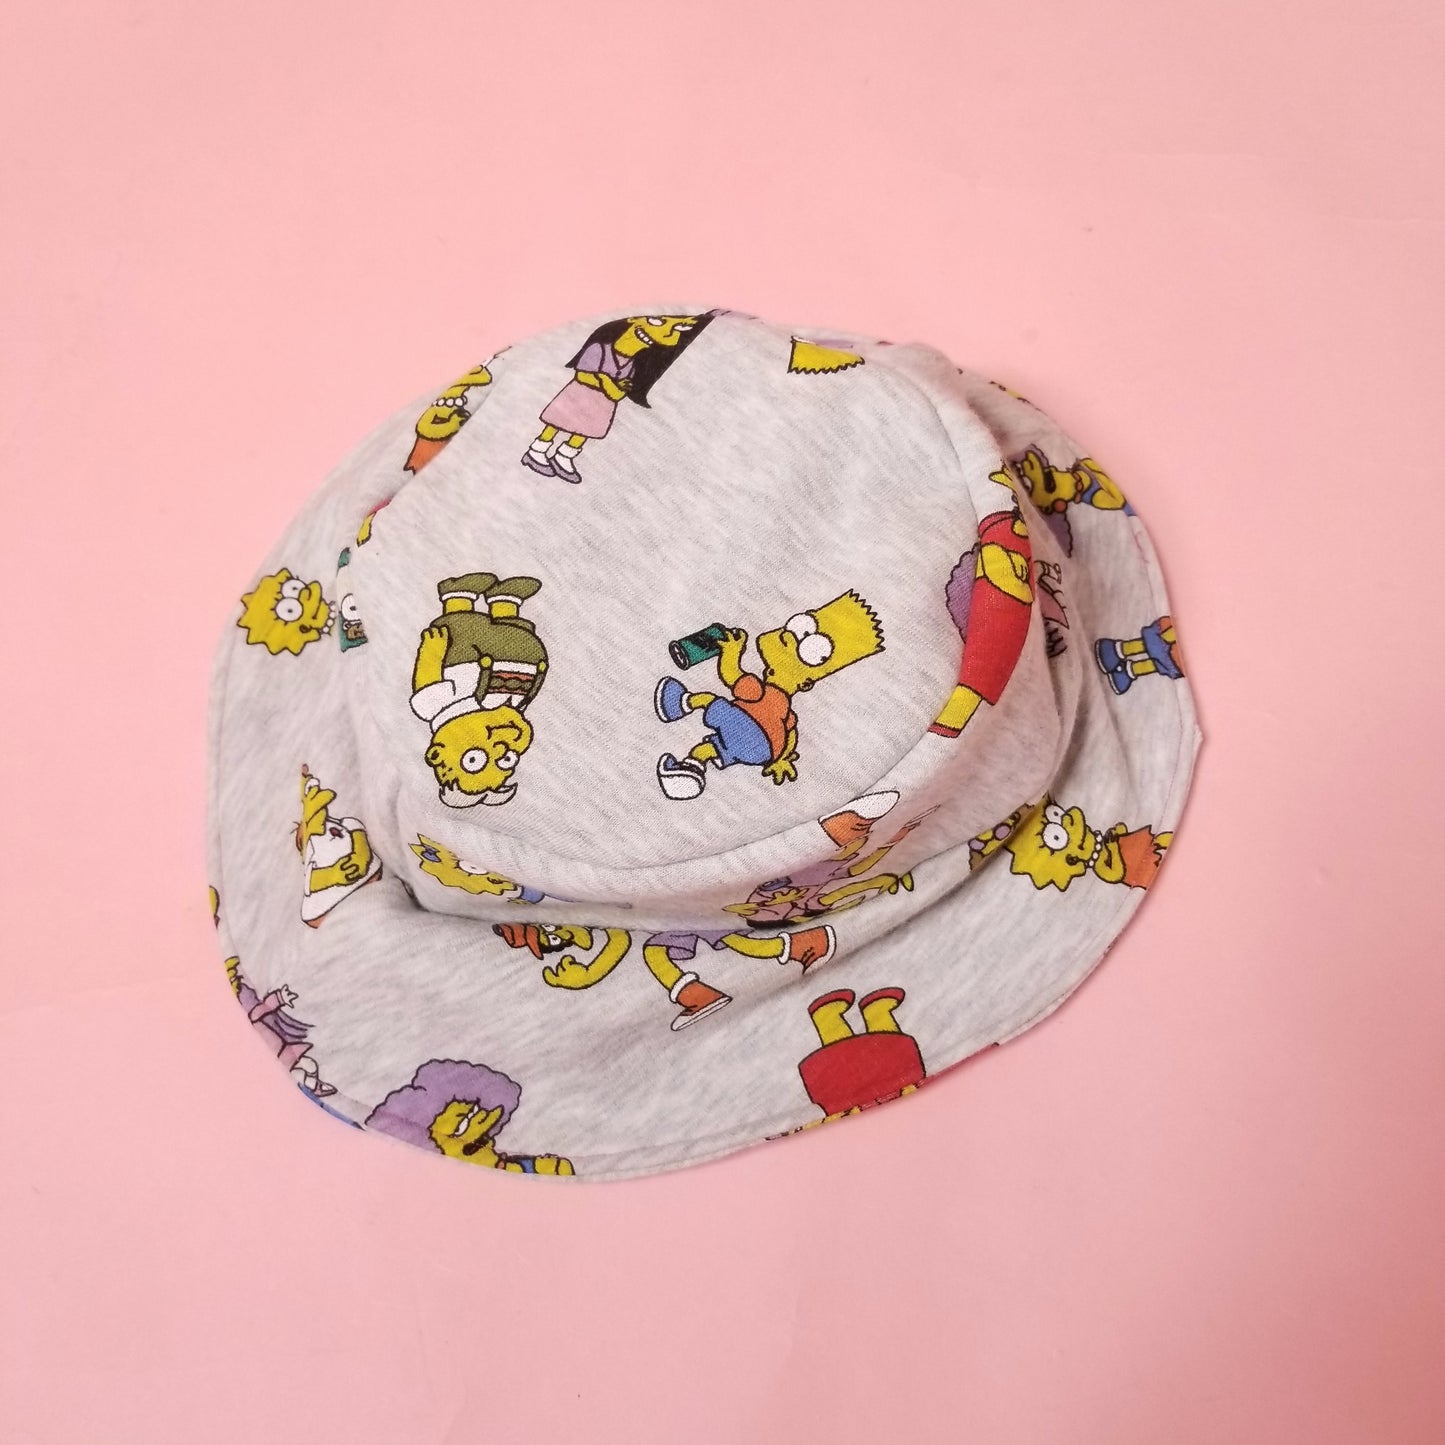 🎶The Simpsooonnss Bucket hat